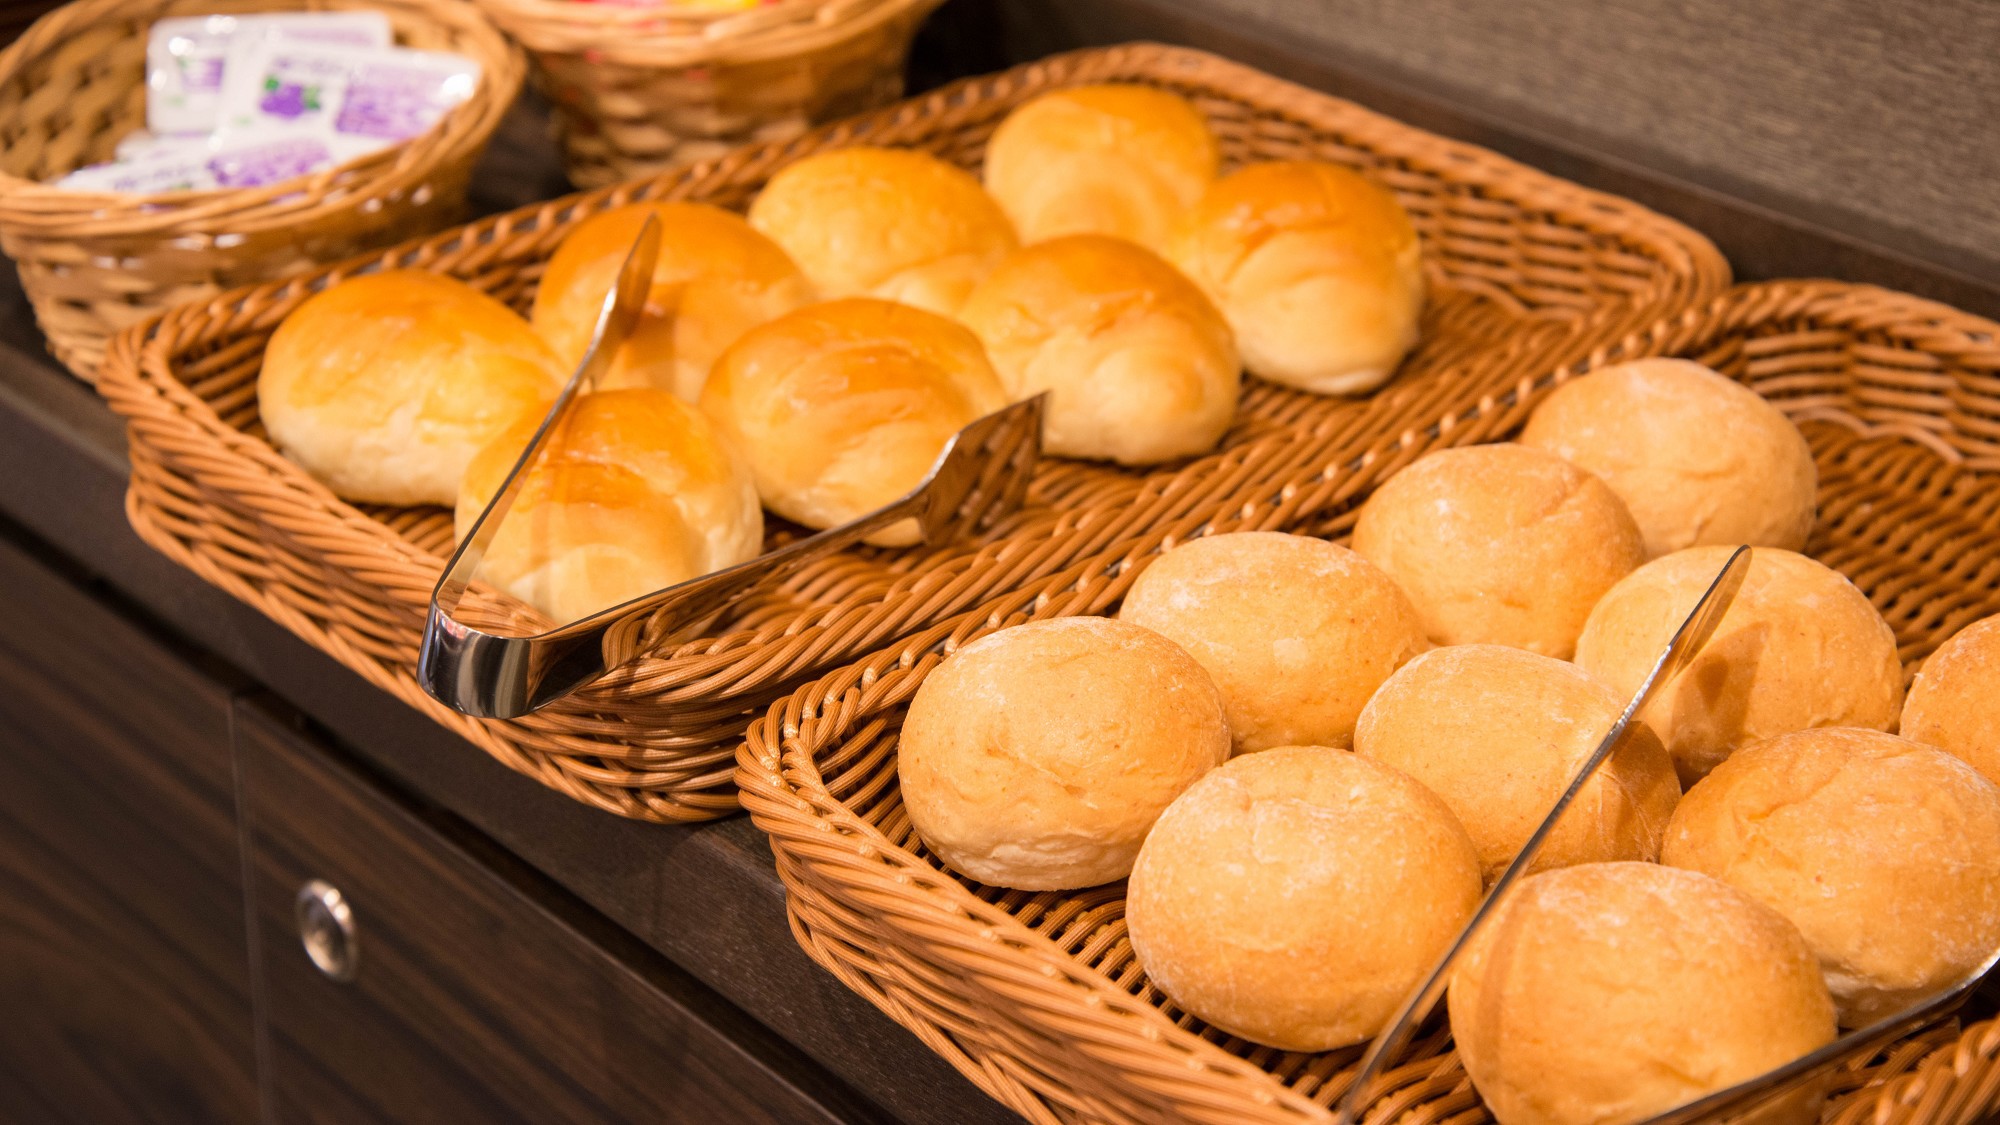 【無料・朝軽食】朝6:00〜9:00までパン提供(※コロナ感染症対策として、個包装タイプに変更中)